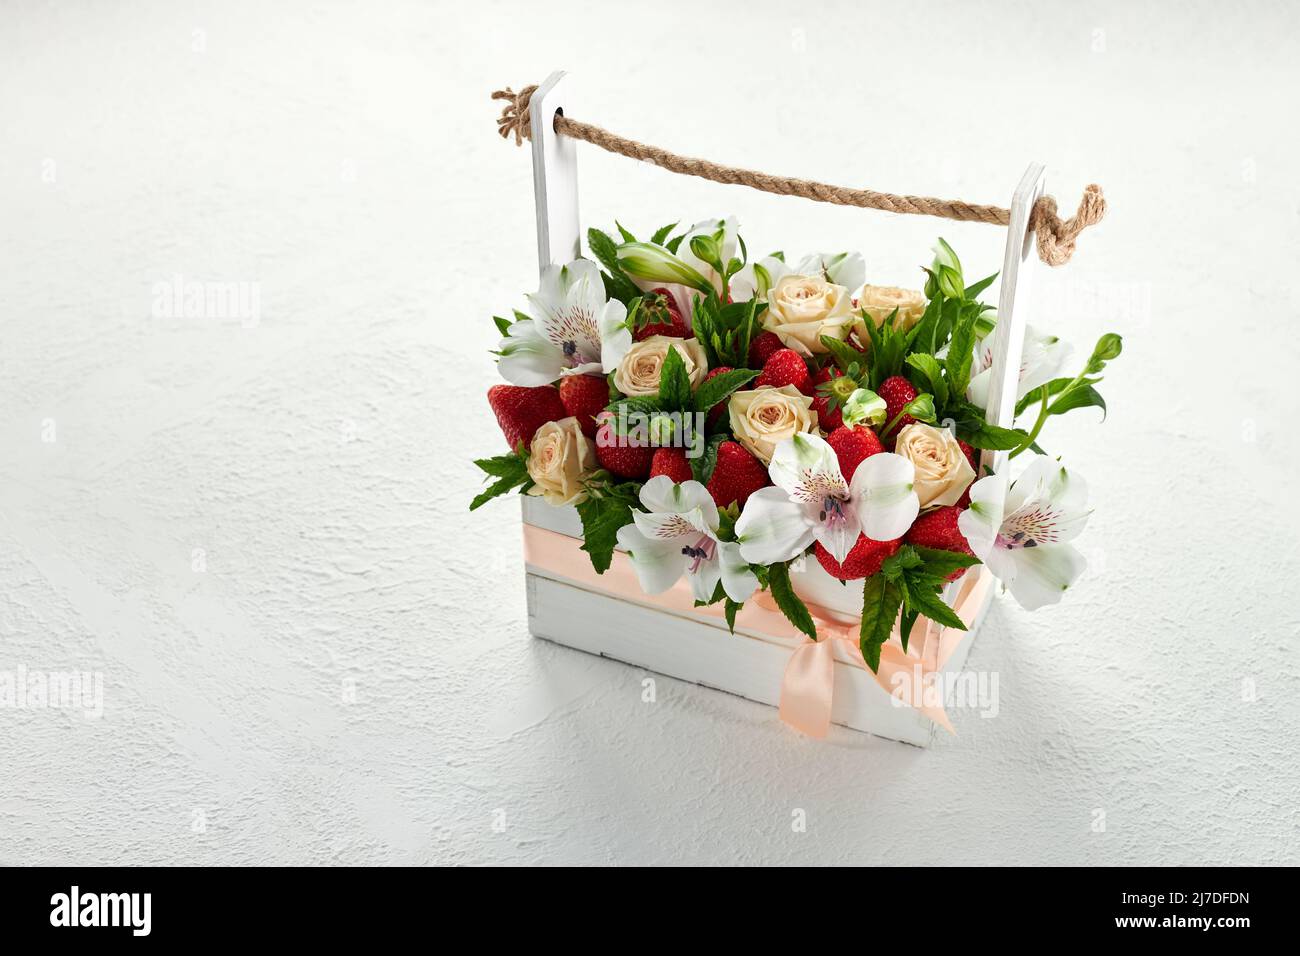 Caja de madera llena de fresas maduras y hermosas flores blancas y rosadas sobre un fondo blanco Foto de stock